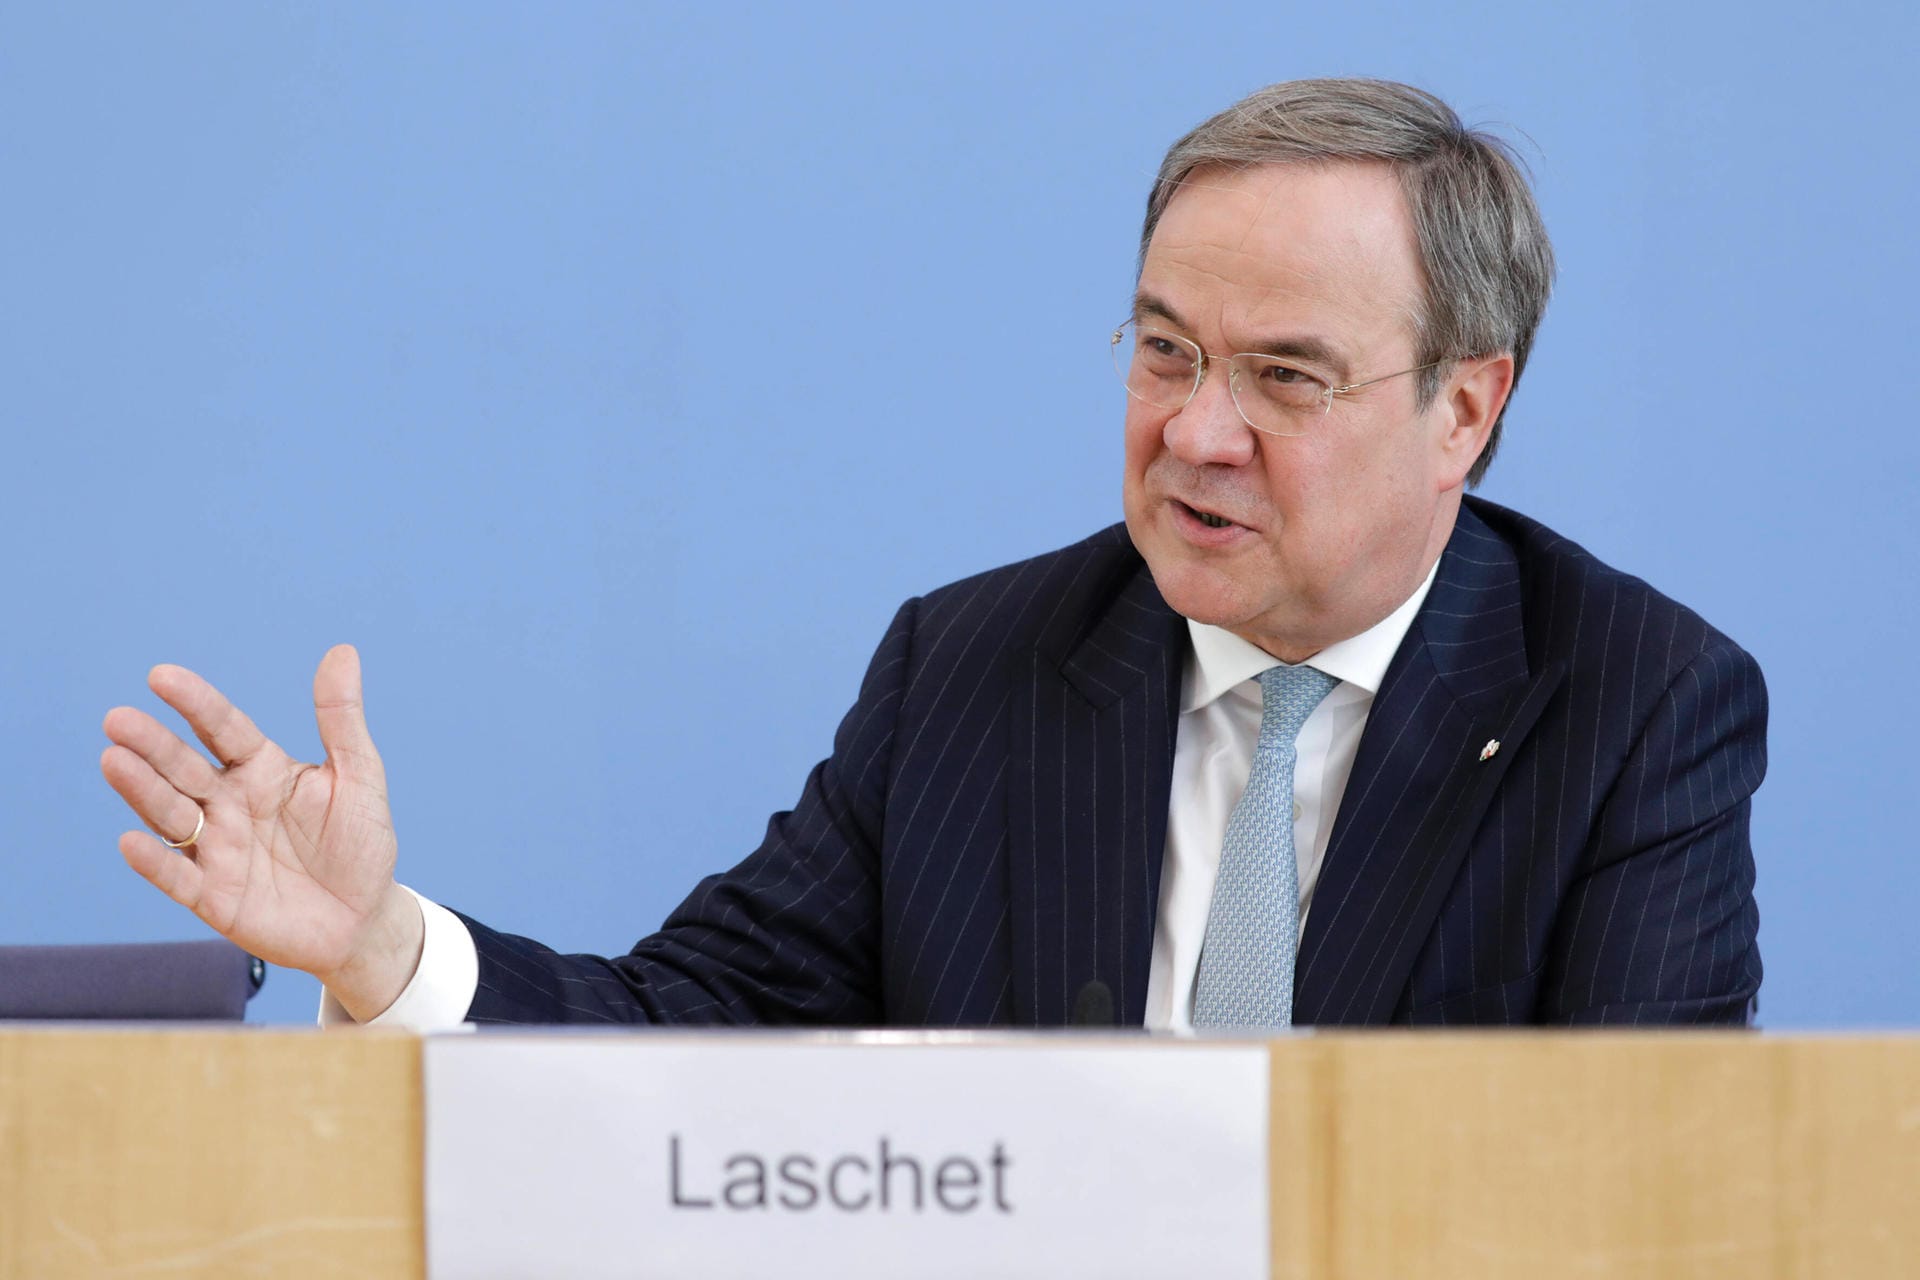 2010 wurde Armin Laschet Mitglied des Landtags Nordrhein-Westfalen, 2012 dann Vorsitzender des CDU-Landesverbandes Nordrhein-Westfalen und stellvertretender Vorsitzender der CDU. 2013 bis 2017 war er zudem Vorsitzender der CDU-Landtagsfraktion in Nordrhein-Westfalen.